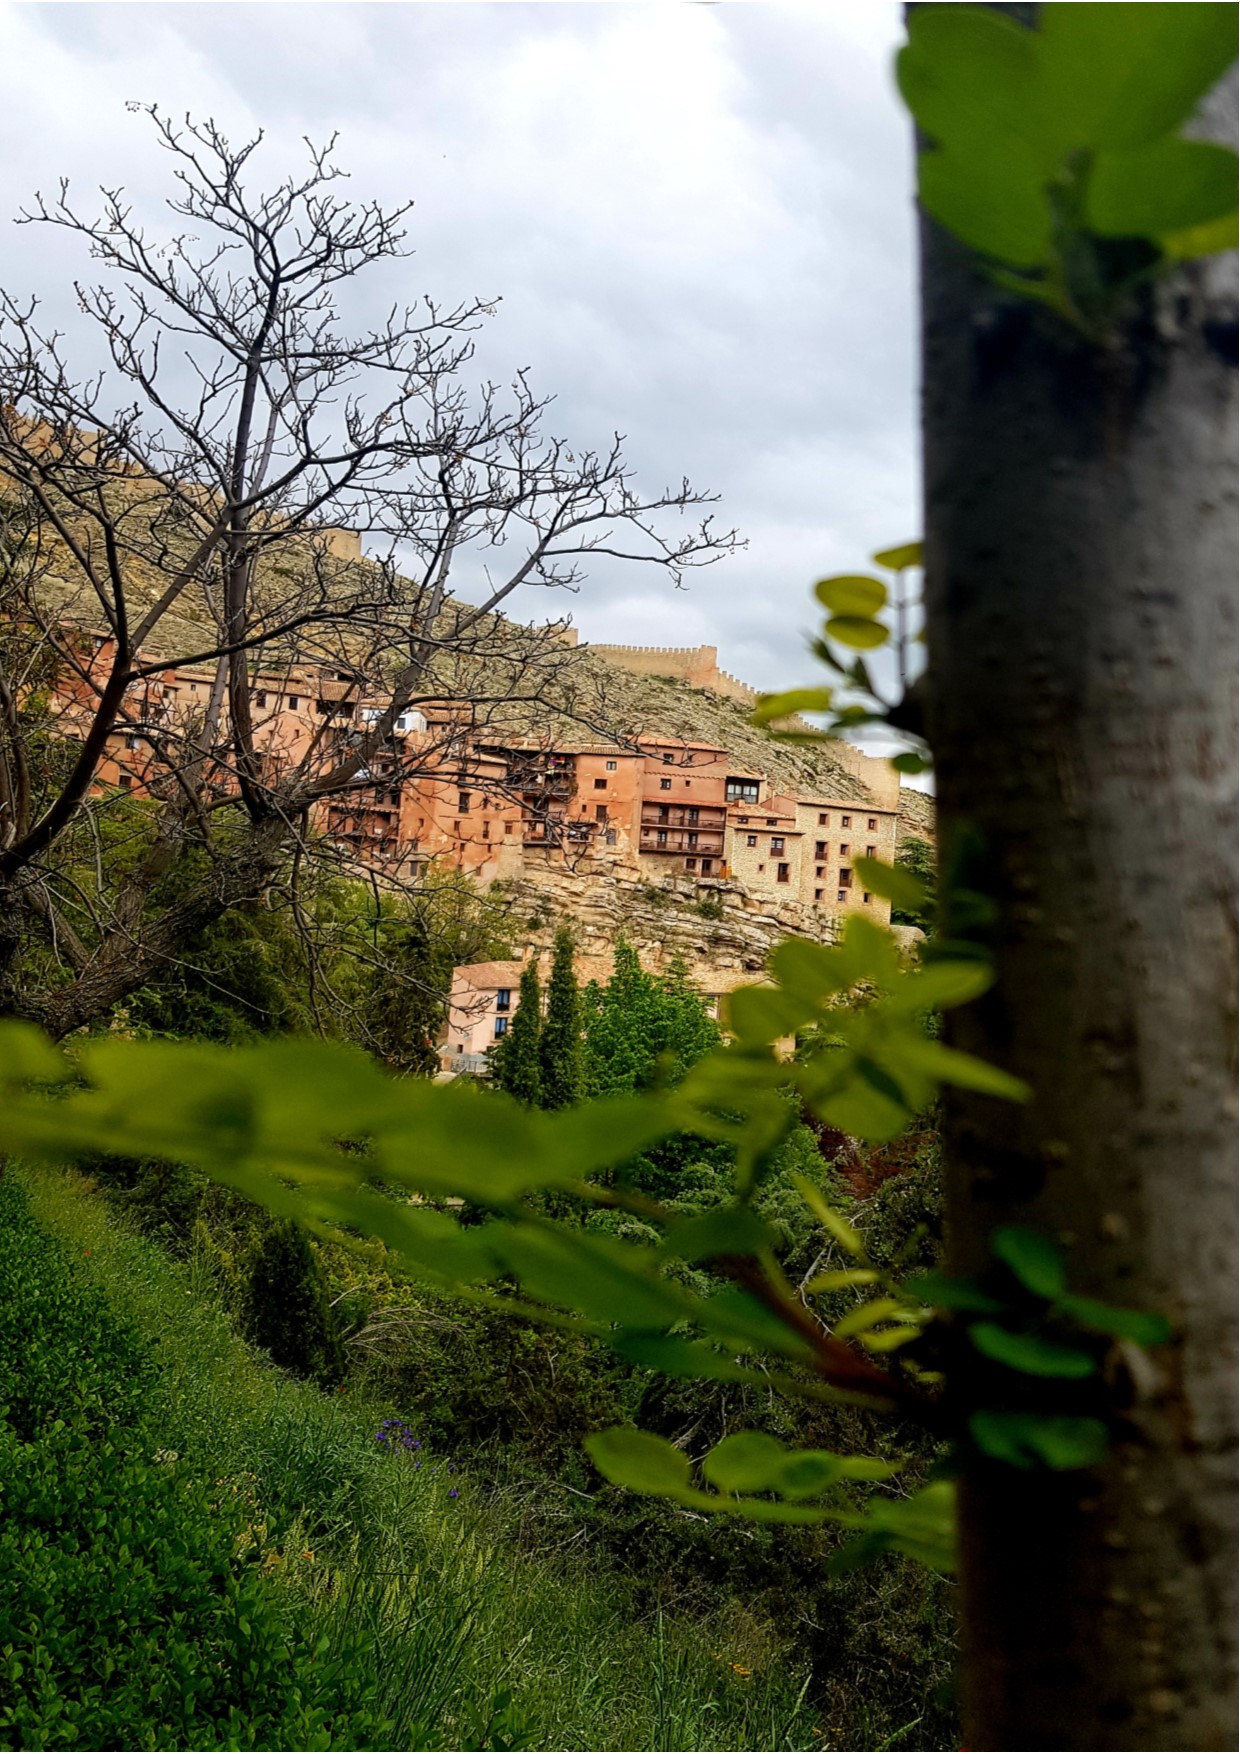 De #VisitaGuiada en #Albarracín con @AndadorVisitasGuiadas…nos deleitamos con estas #PanorámicasQueEnamoran…#TeEsperamos!